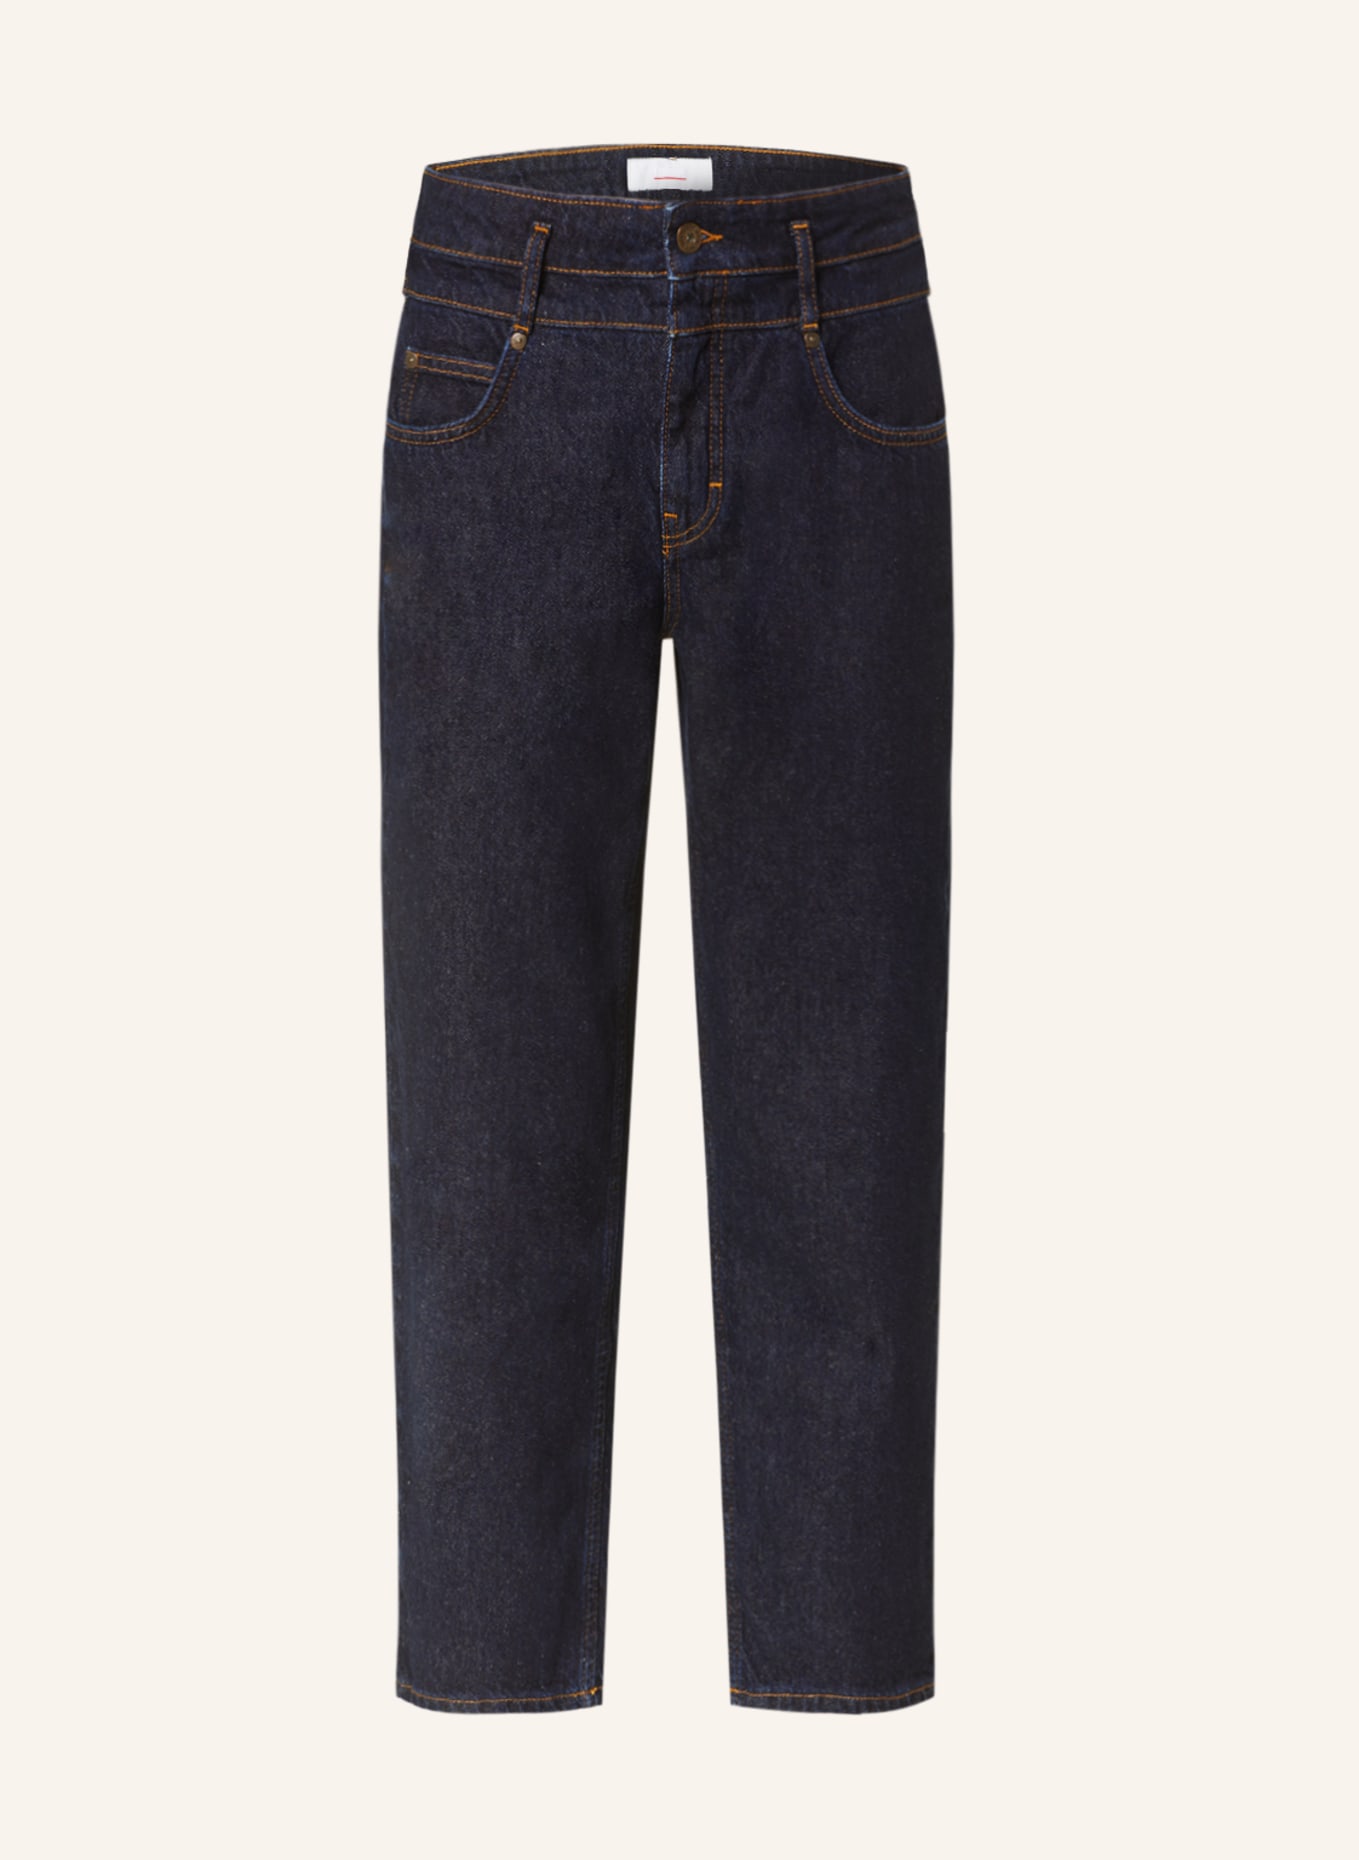 CINQUE Jeans-Culotte CISOLEIL, Farbe: 69 DUNKELBLAU (Bild 1)